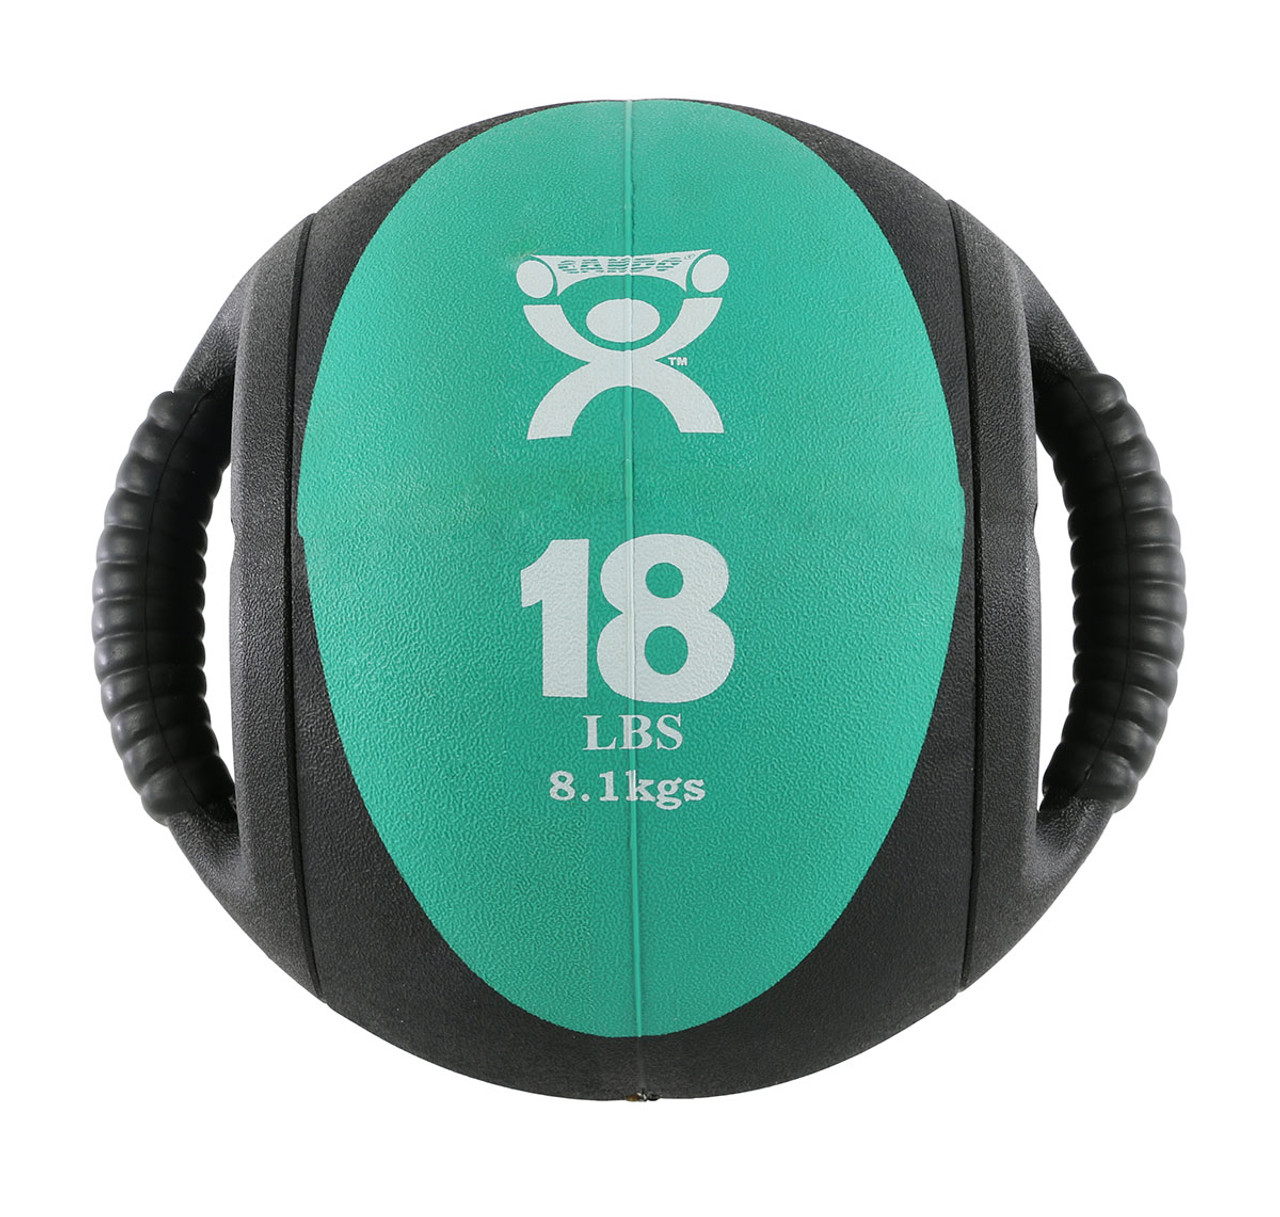 CanDo¨ Dual-Handle Medicine Ball - 9" Diameter - Green - 18 lb